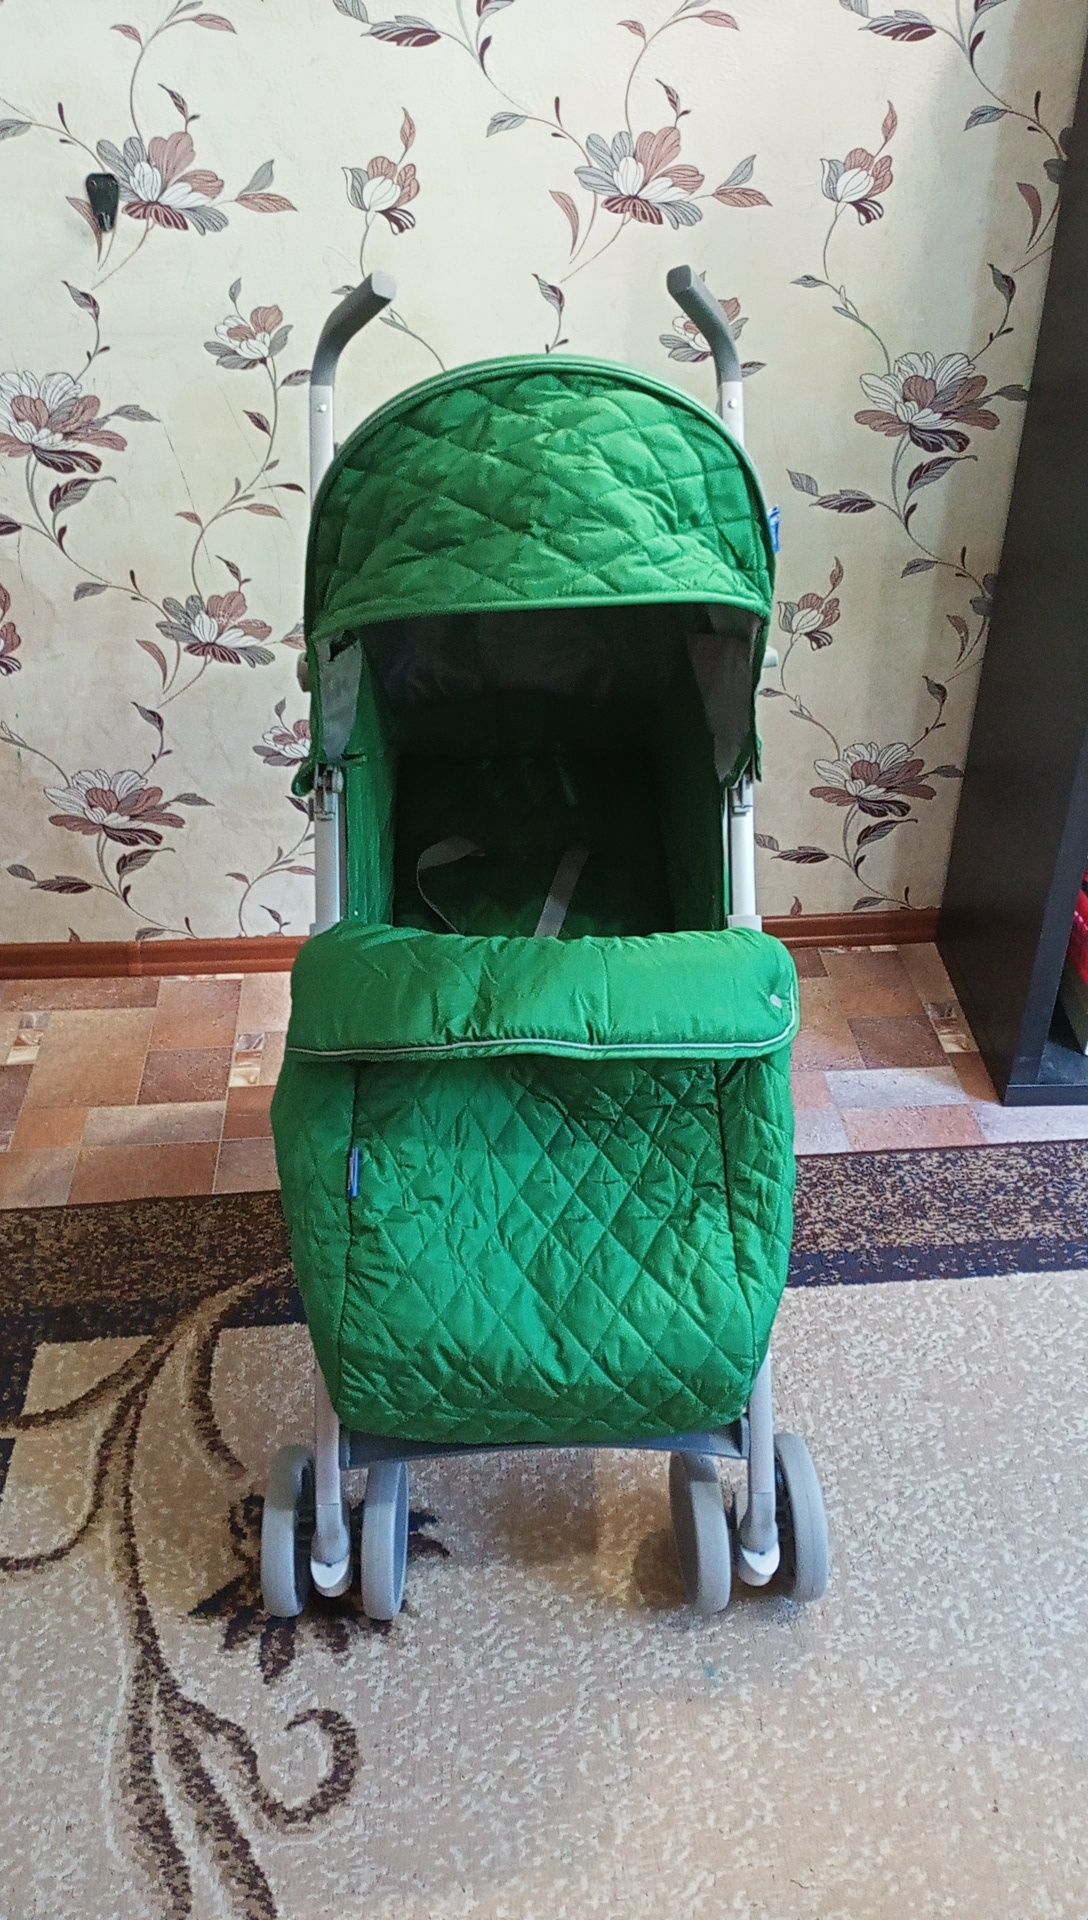 Продам детскую коляску (костыльки), производство Италия